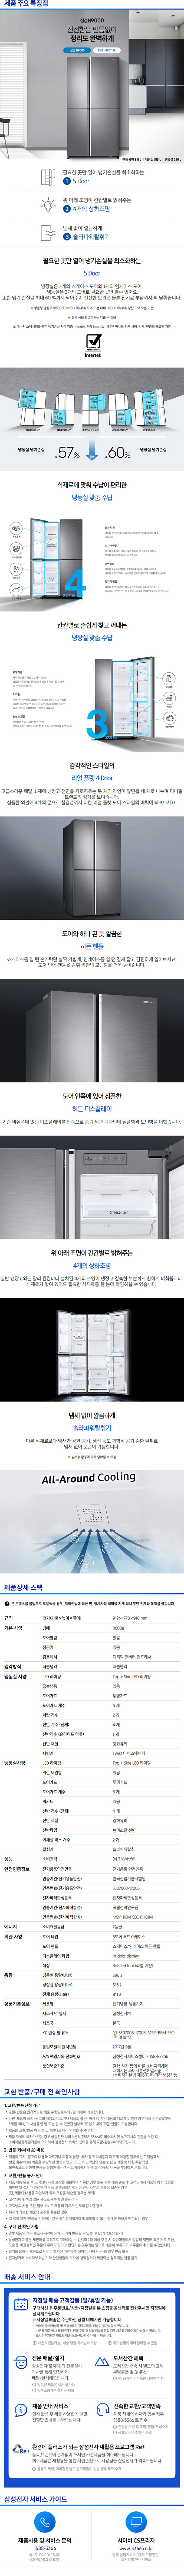 성동케이블 - 삼성 지펠 양문냉장고 (RH81M8011S9) 상세보기